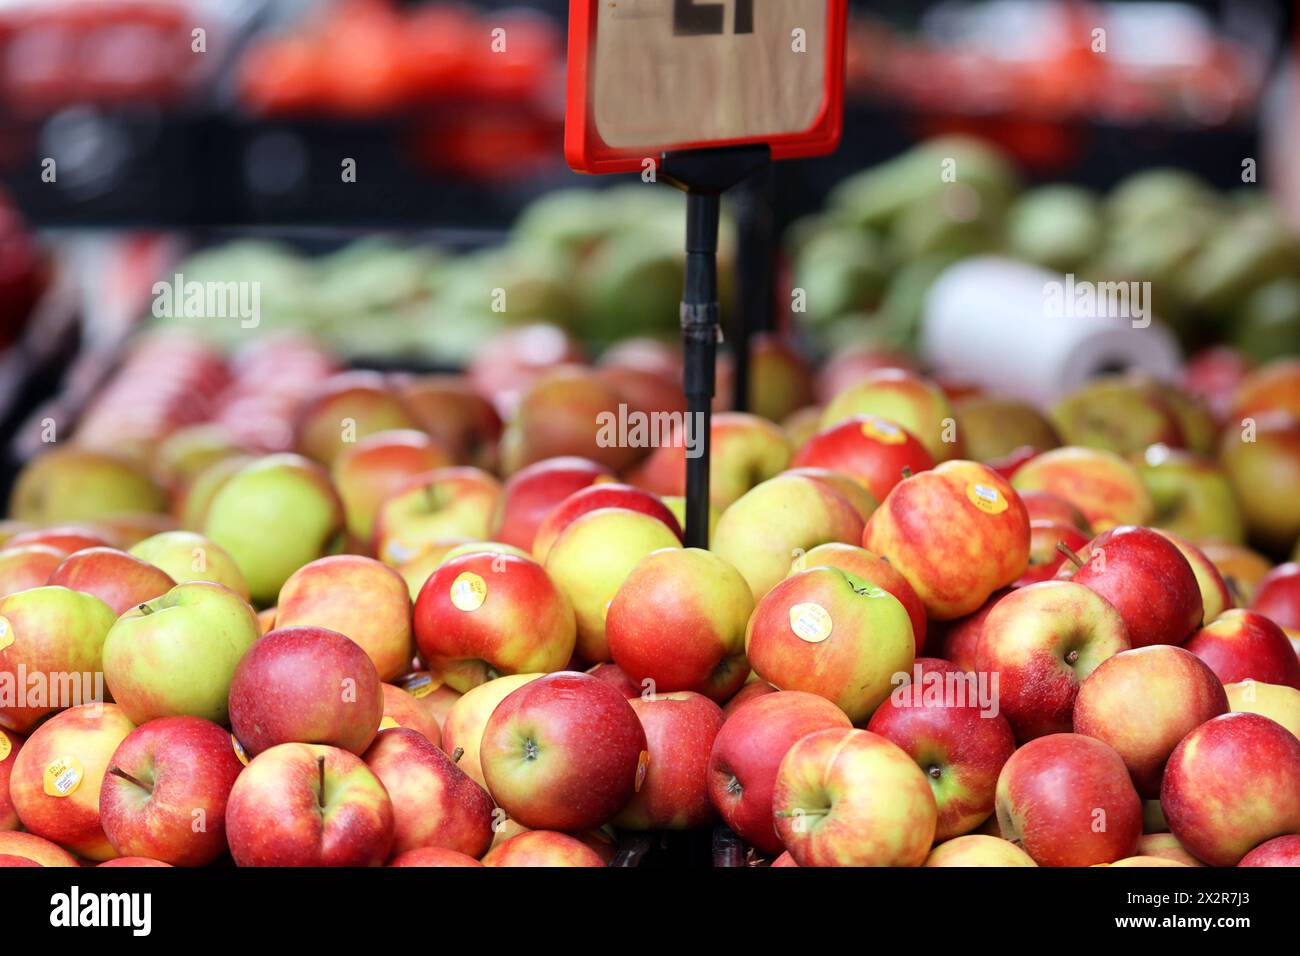 Obst ohne Verpackung Äpfel die lose angeboten werden, liegen an einem Obststand zum Verkauf bereit *** Obst ohne Verpackung Äpfel, die lose angeboten werden, stehen an einem Obststand zum Verkauf zur Verfügung Stockfoto